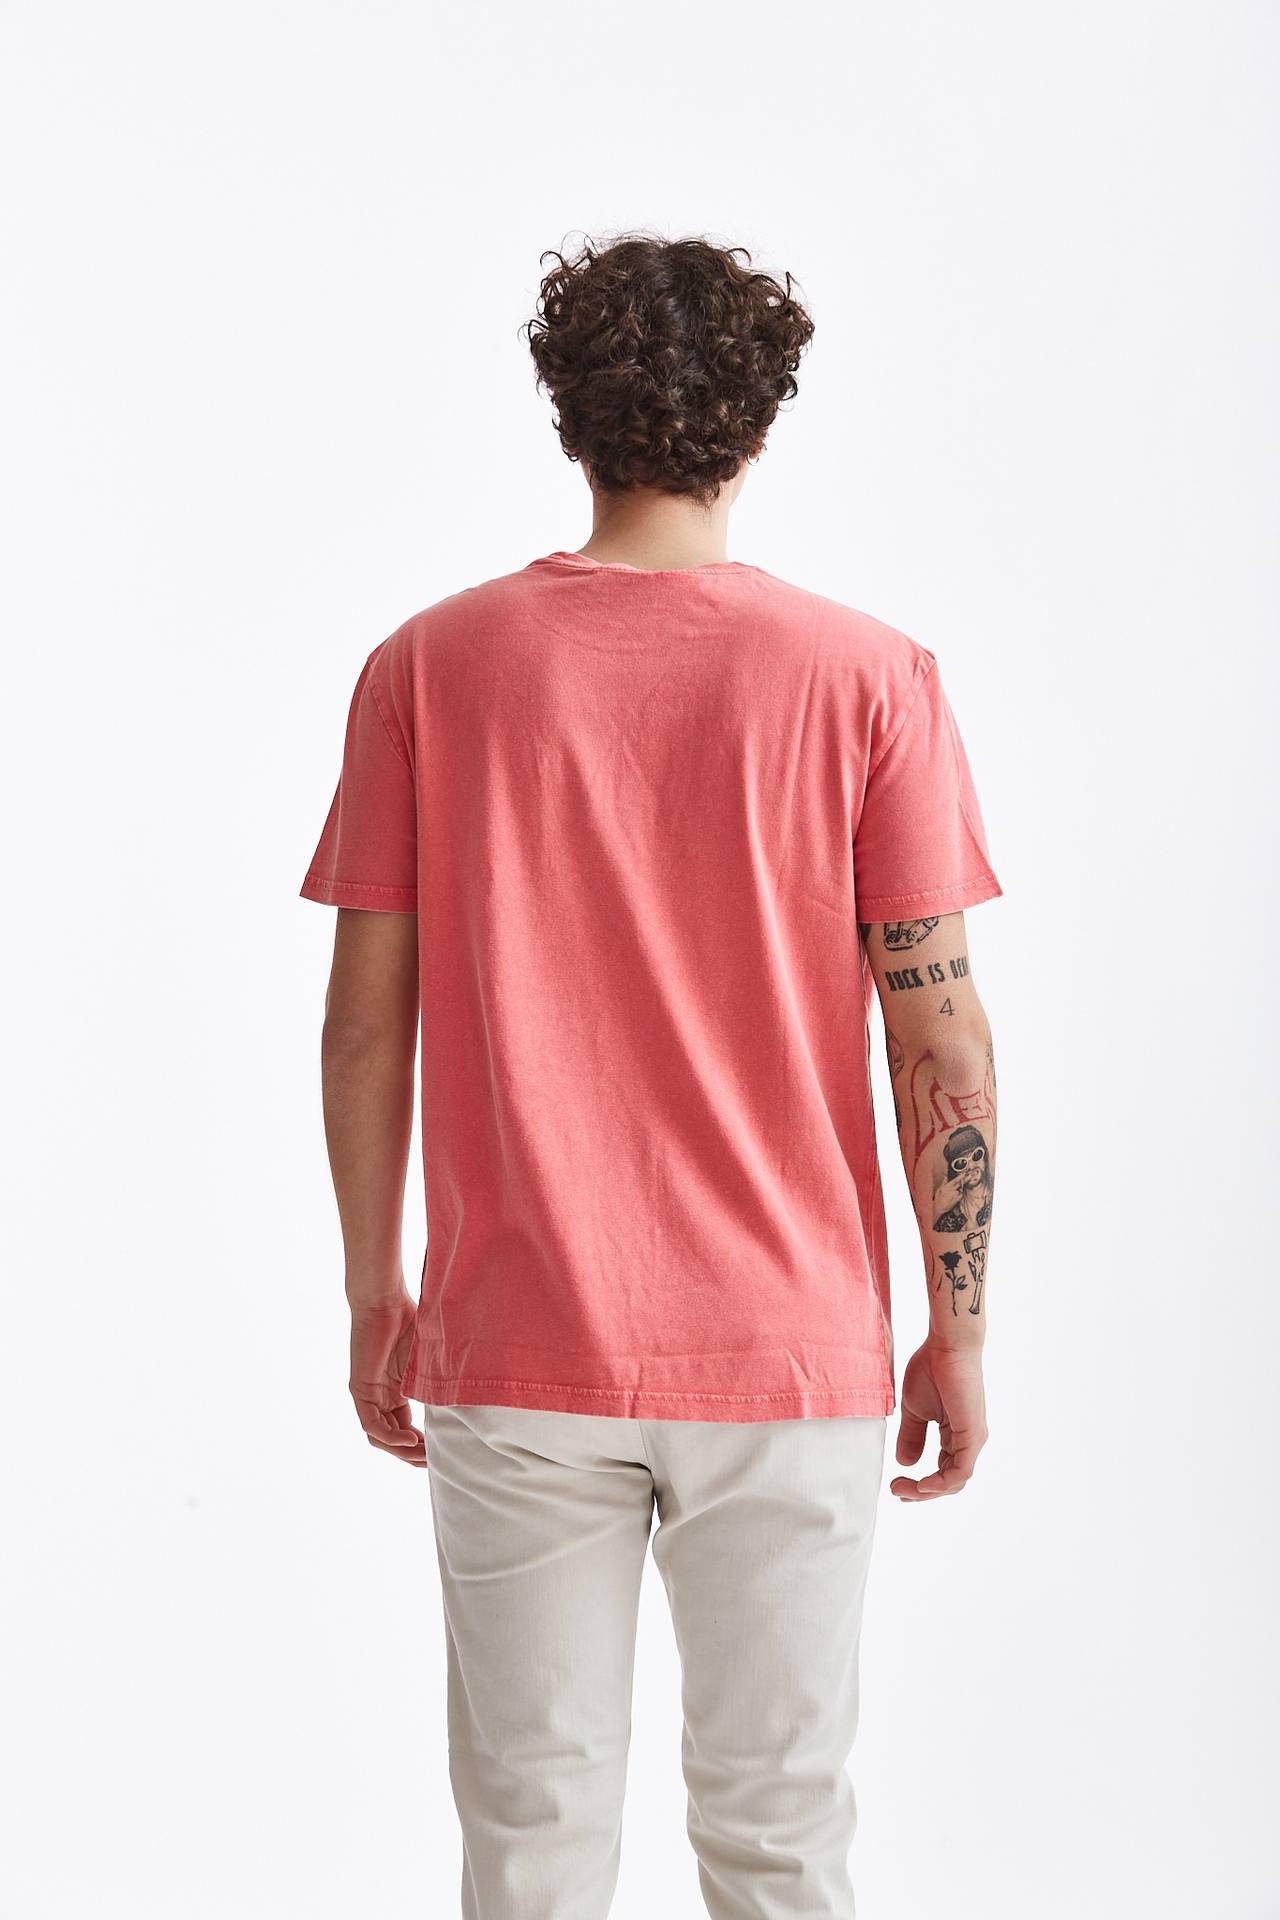 T-shirt in cotone/lino corallo 